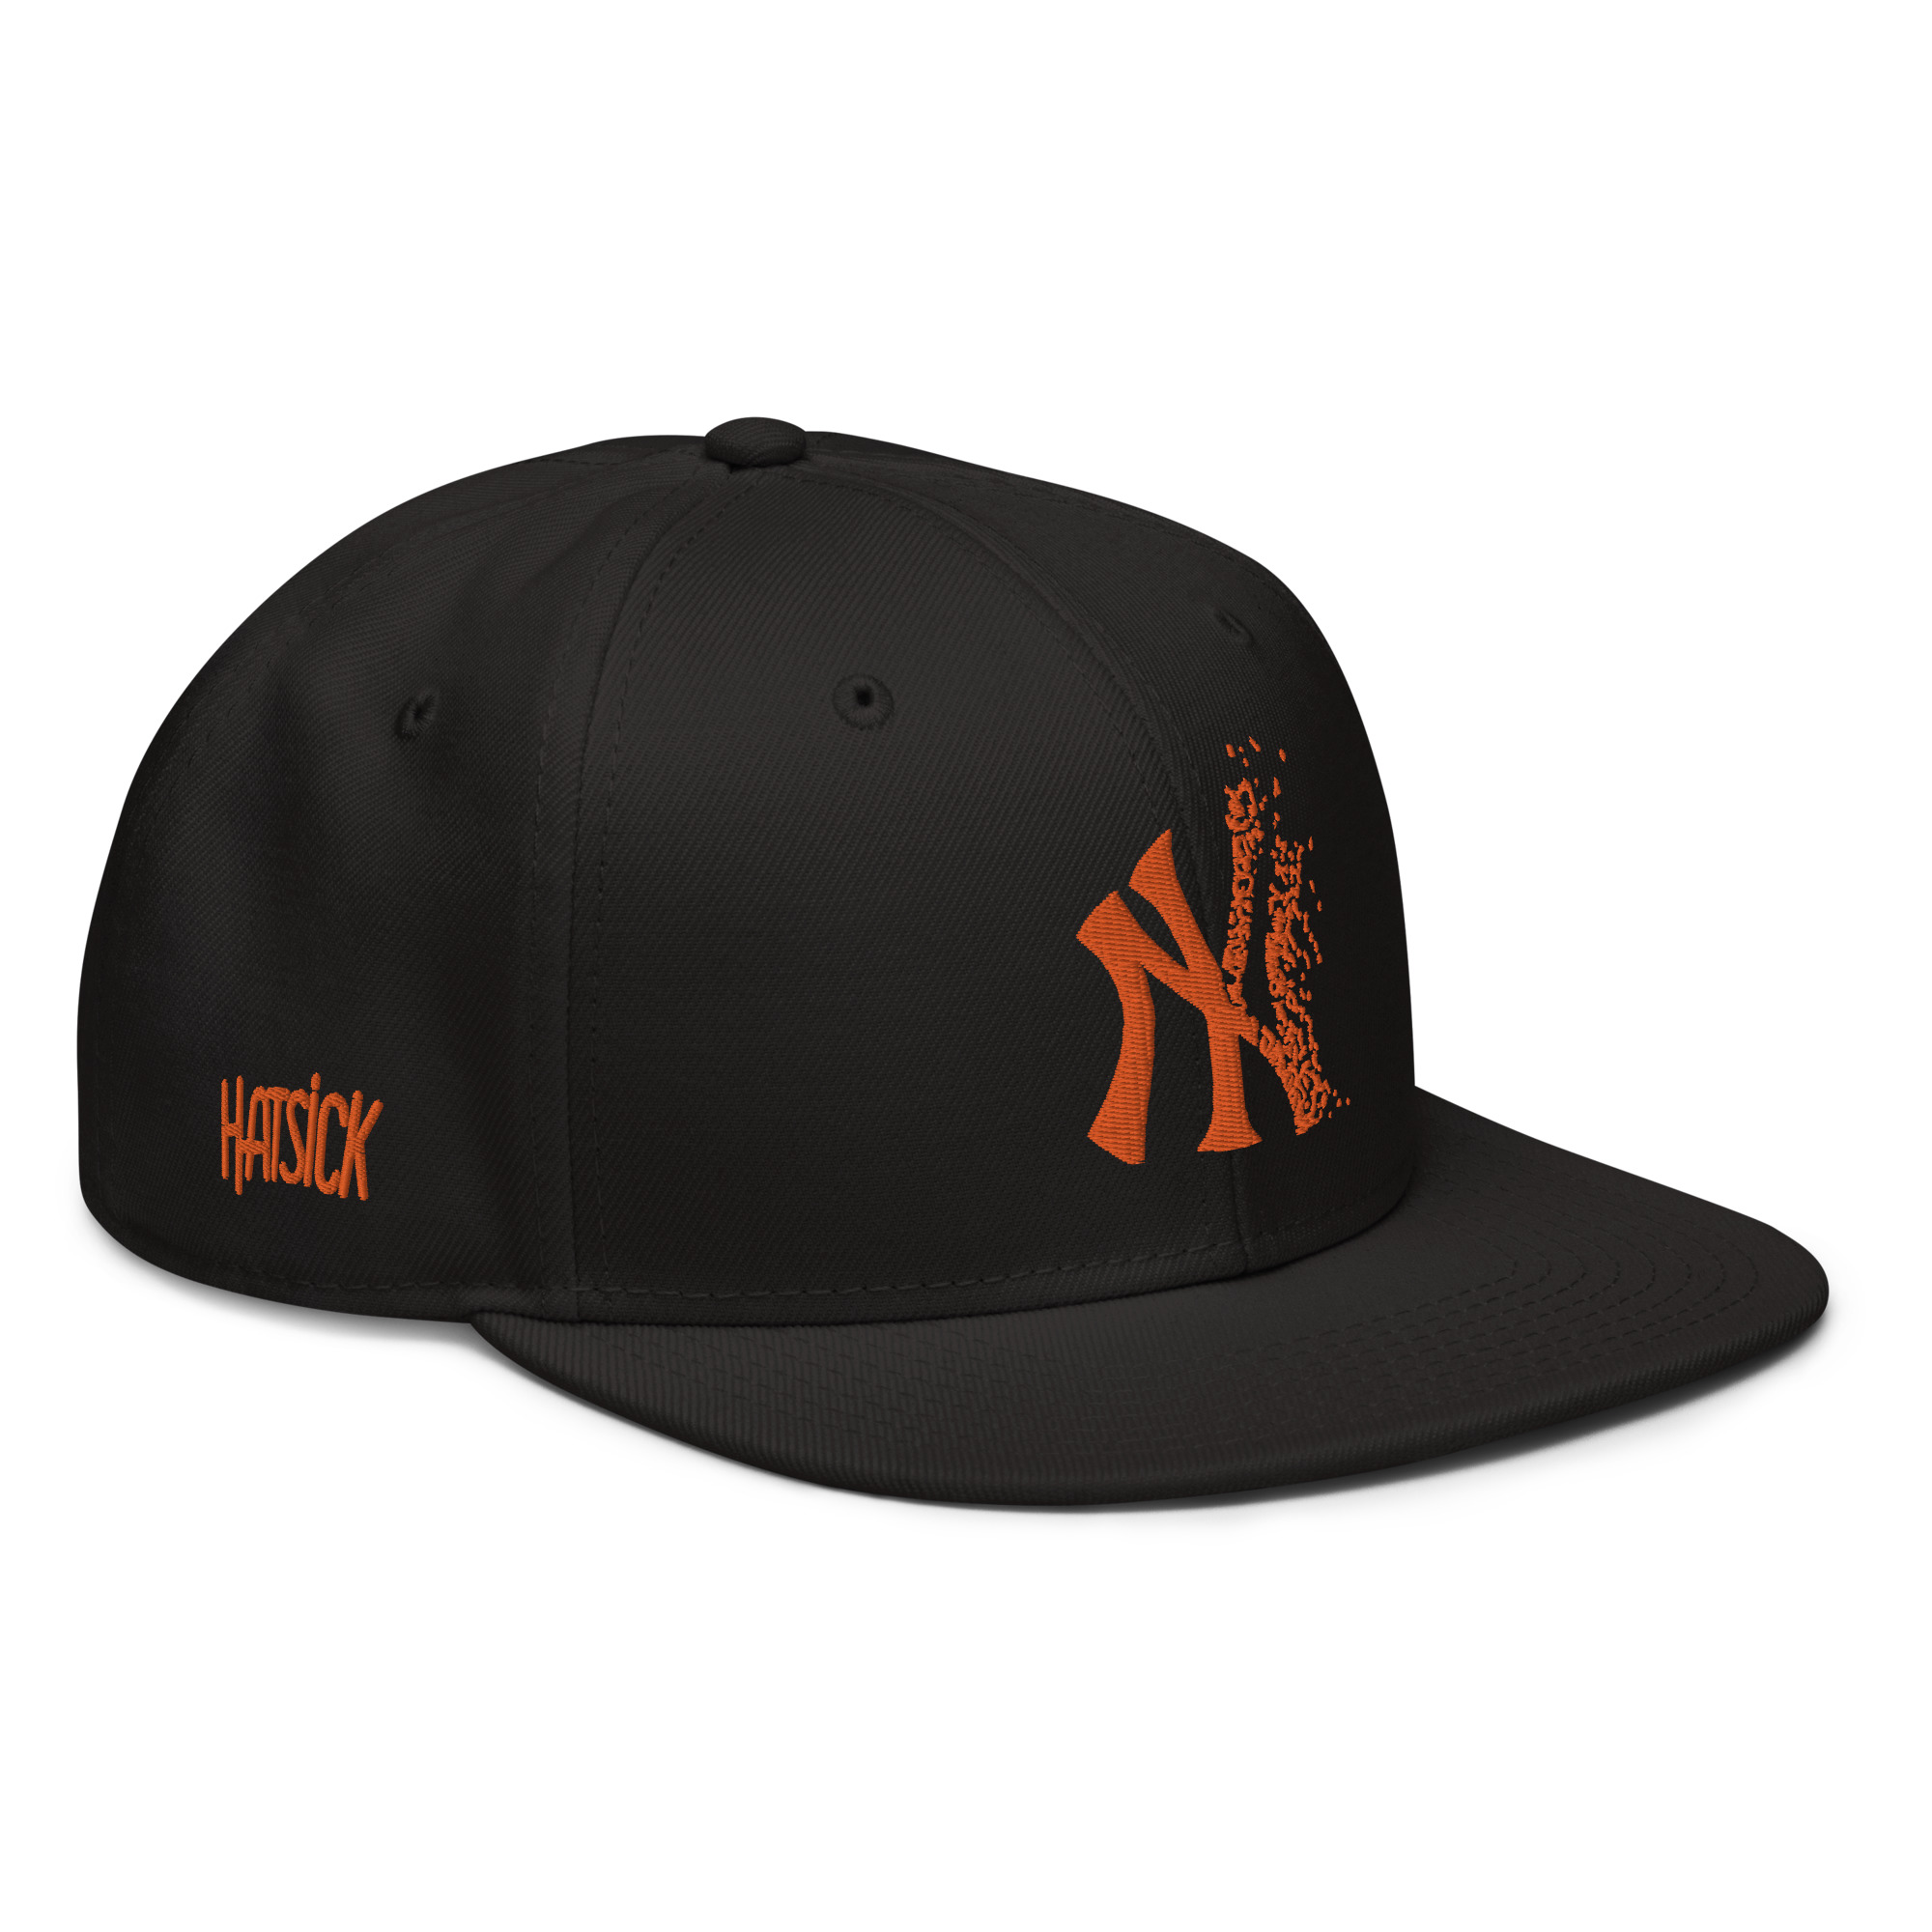 NY Snapback Hat